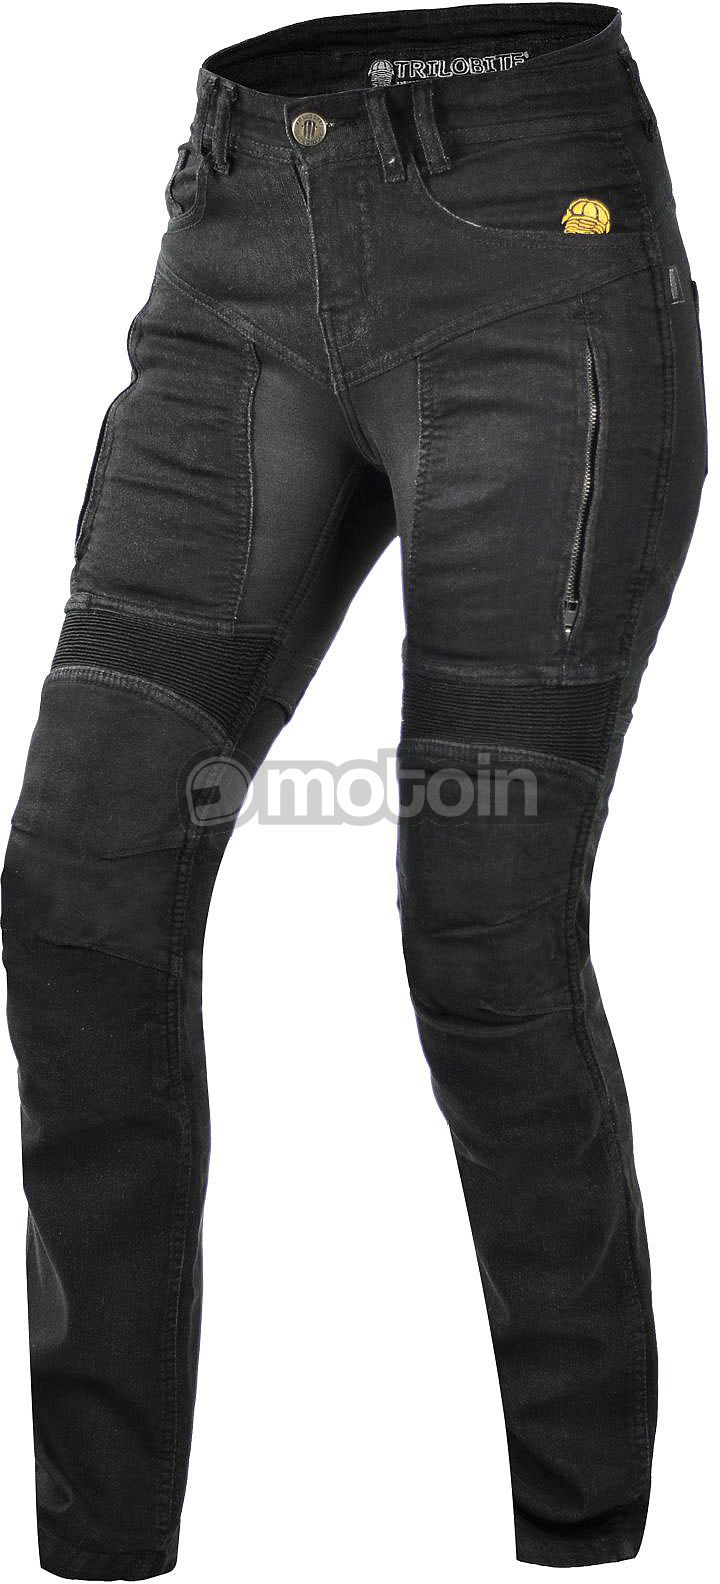 Trilobite Parado Slim-Fit, jeansy damskie